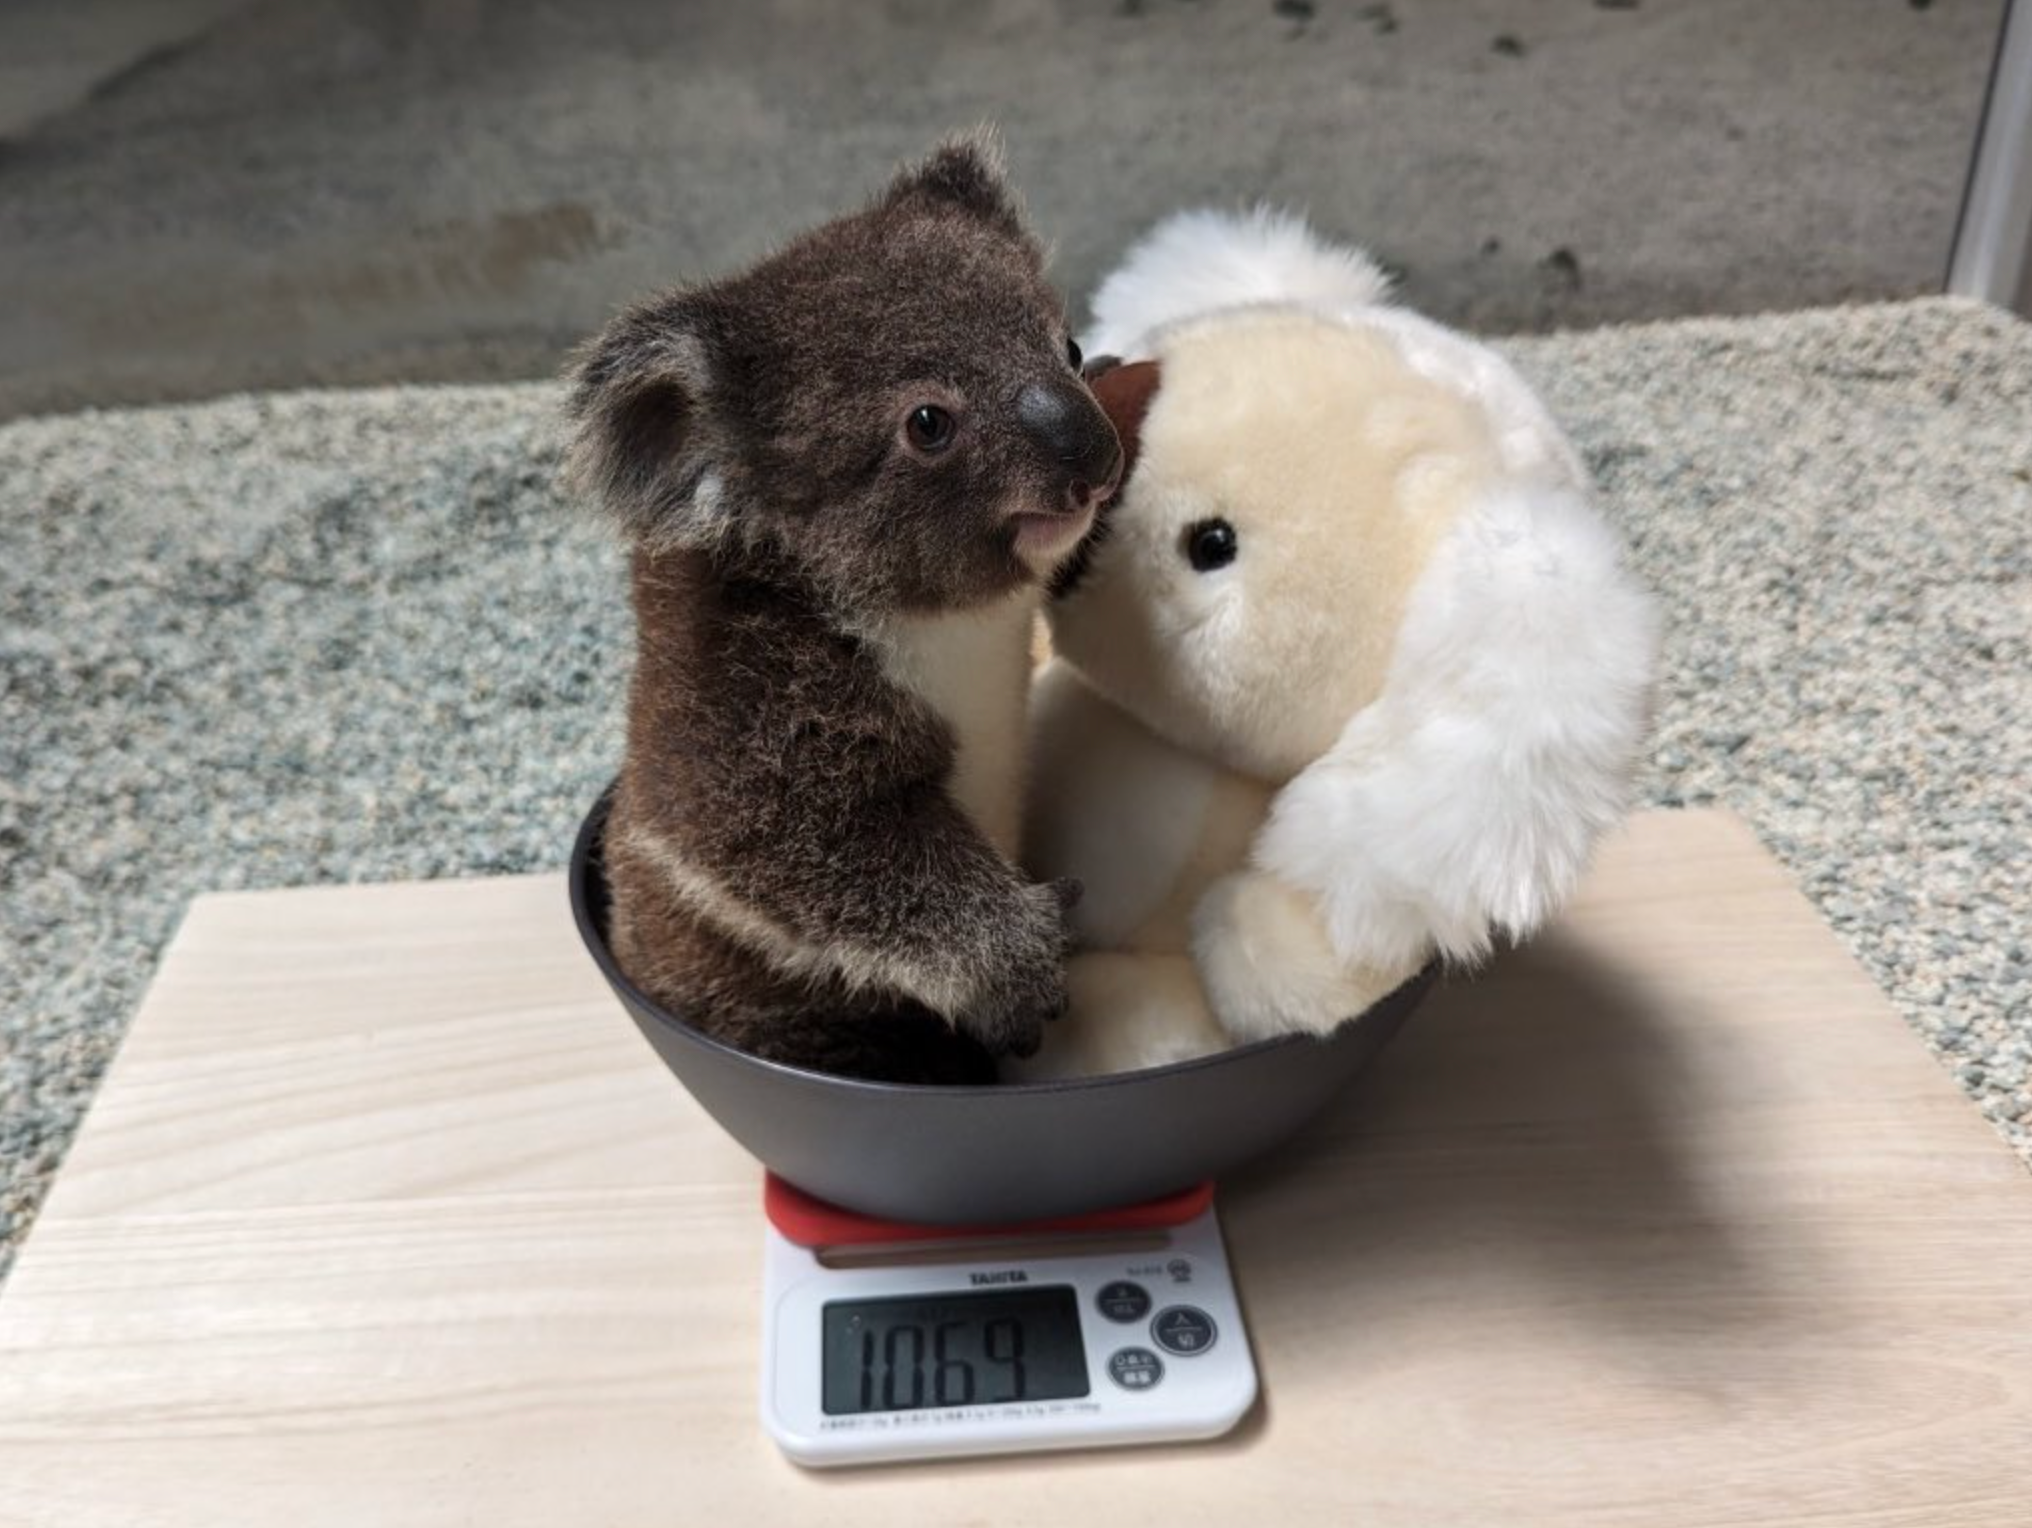 โคอาล่าชั่งน้ำหนักพร้อมกับตุ๊กตา สวนสัตว์ญี่ปุ่น